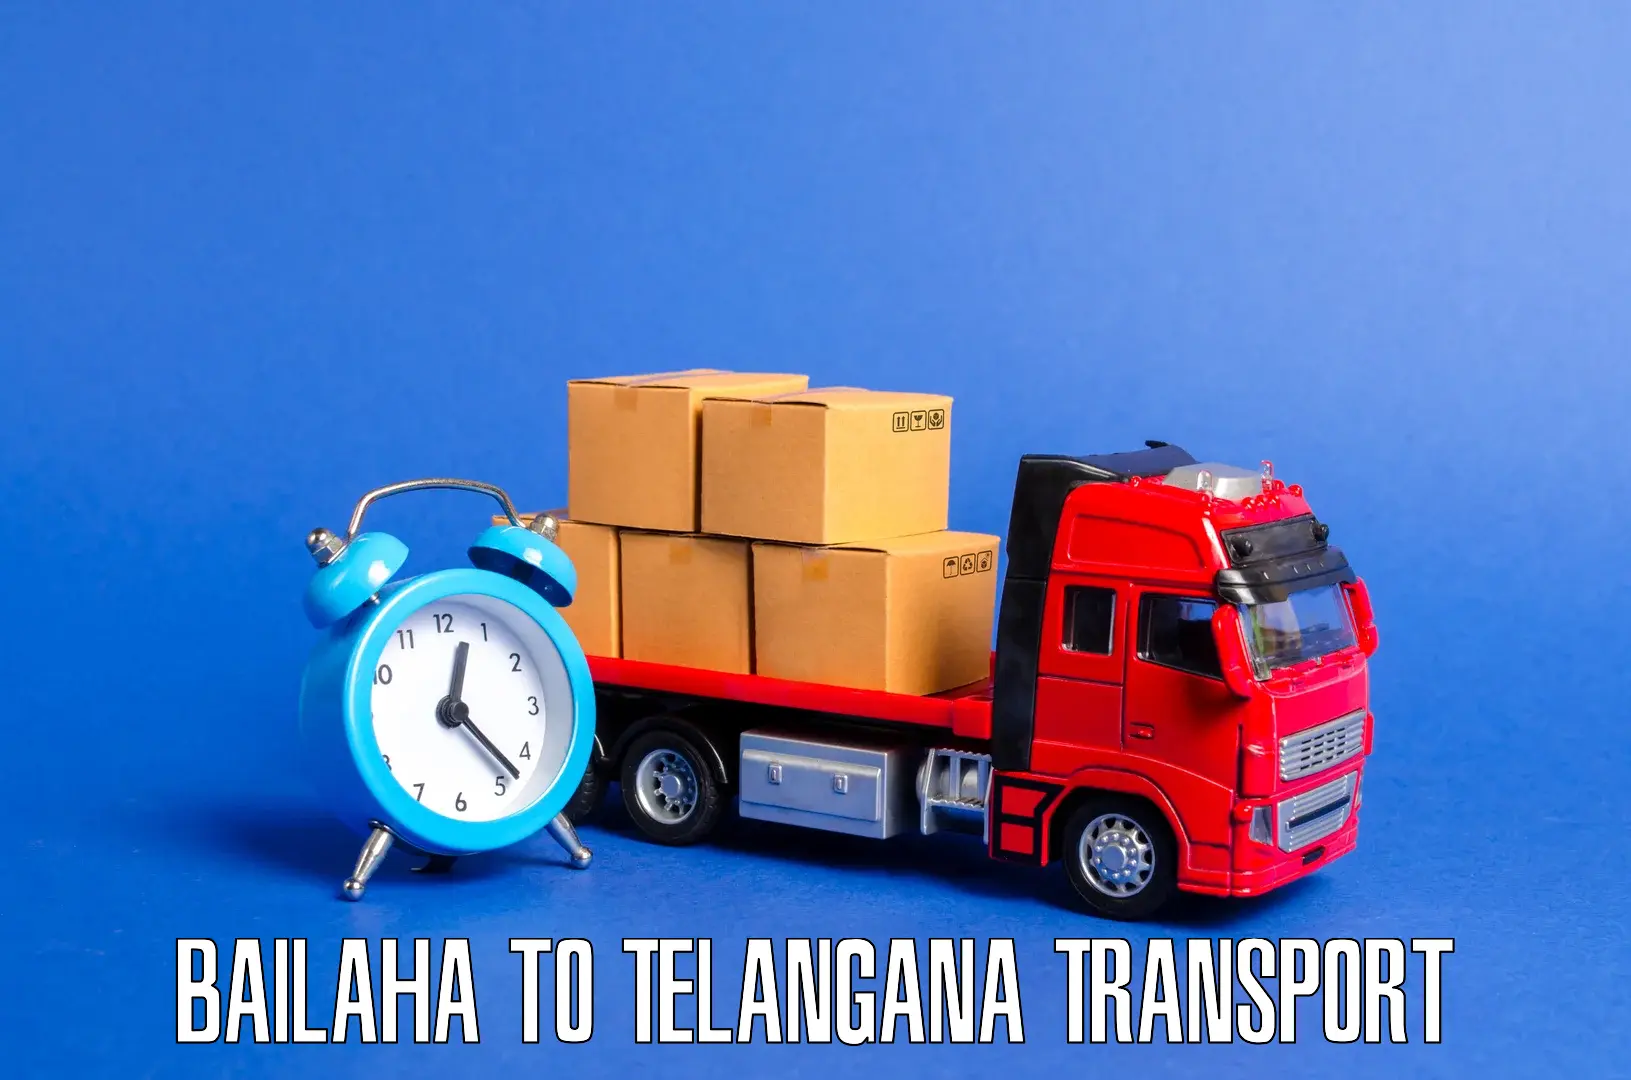 Express transport services Bailaha to Telangana